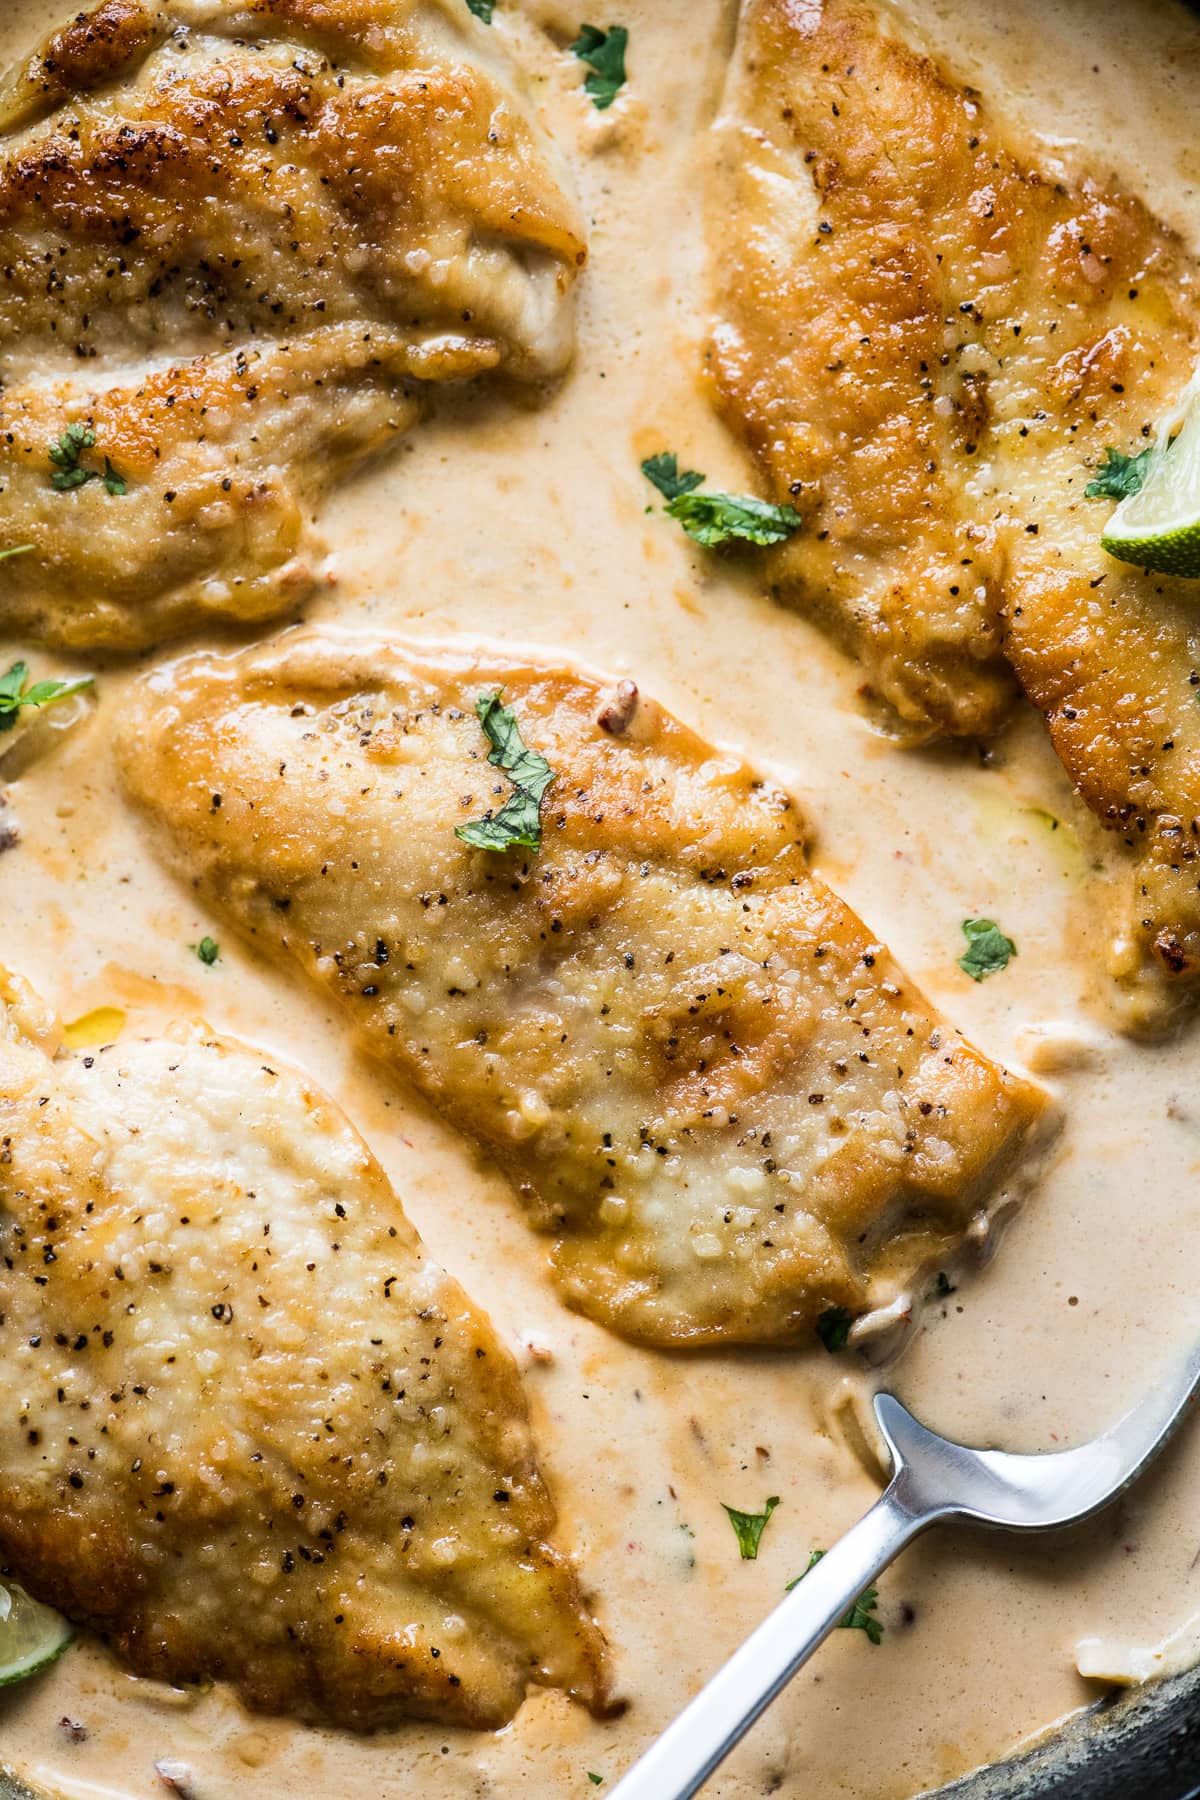 Pollo en Chipotle - Creamy Chipotle Chicken